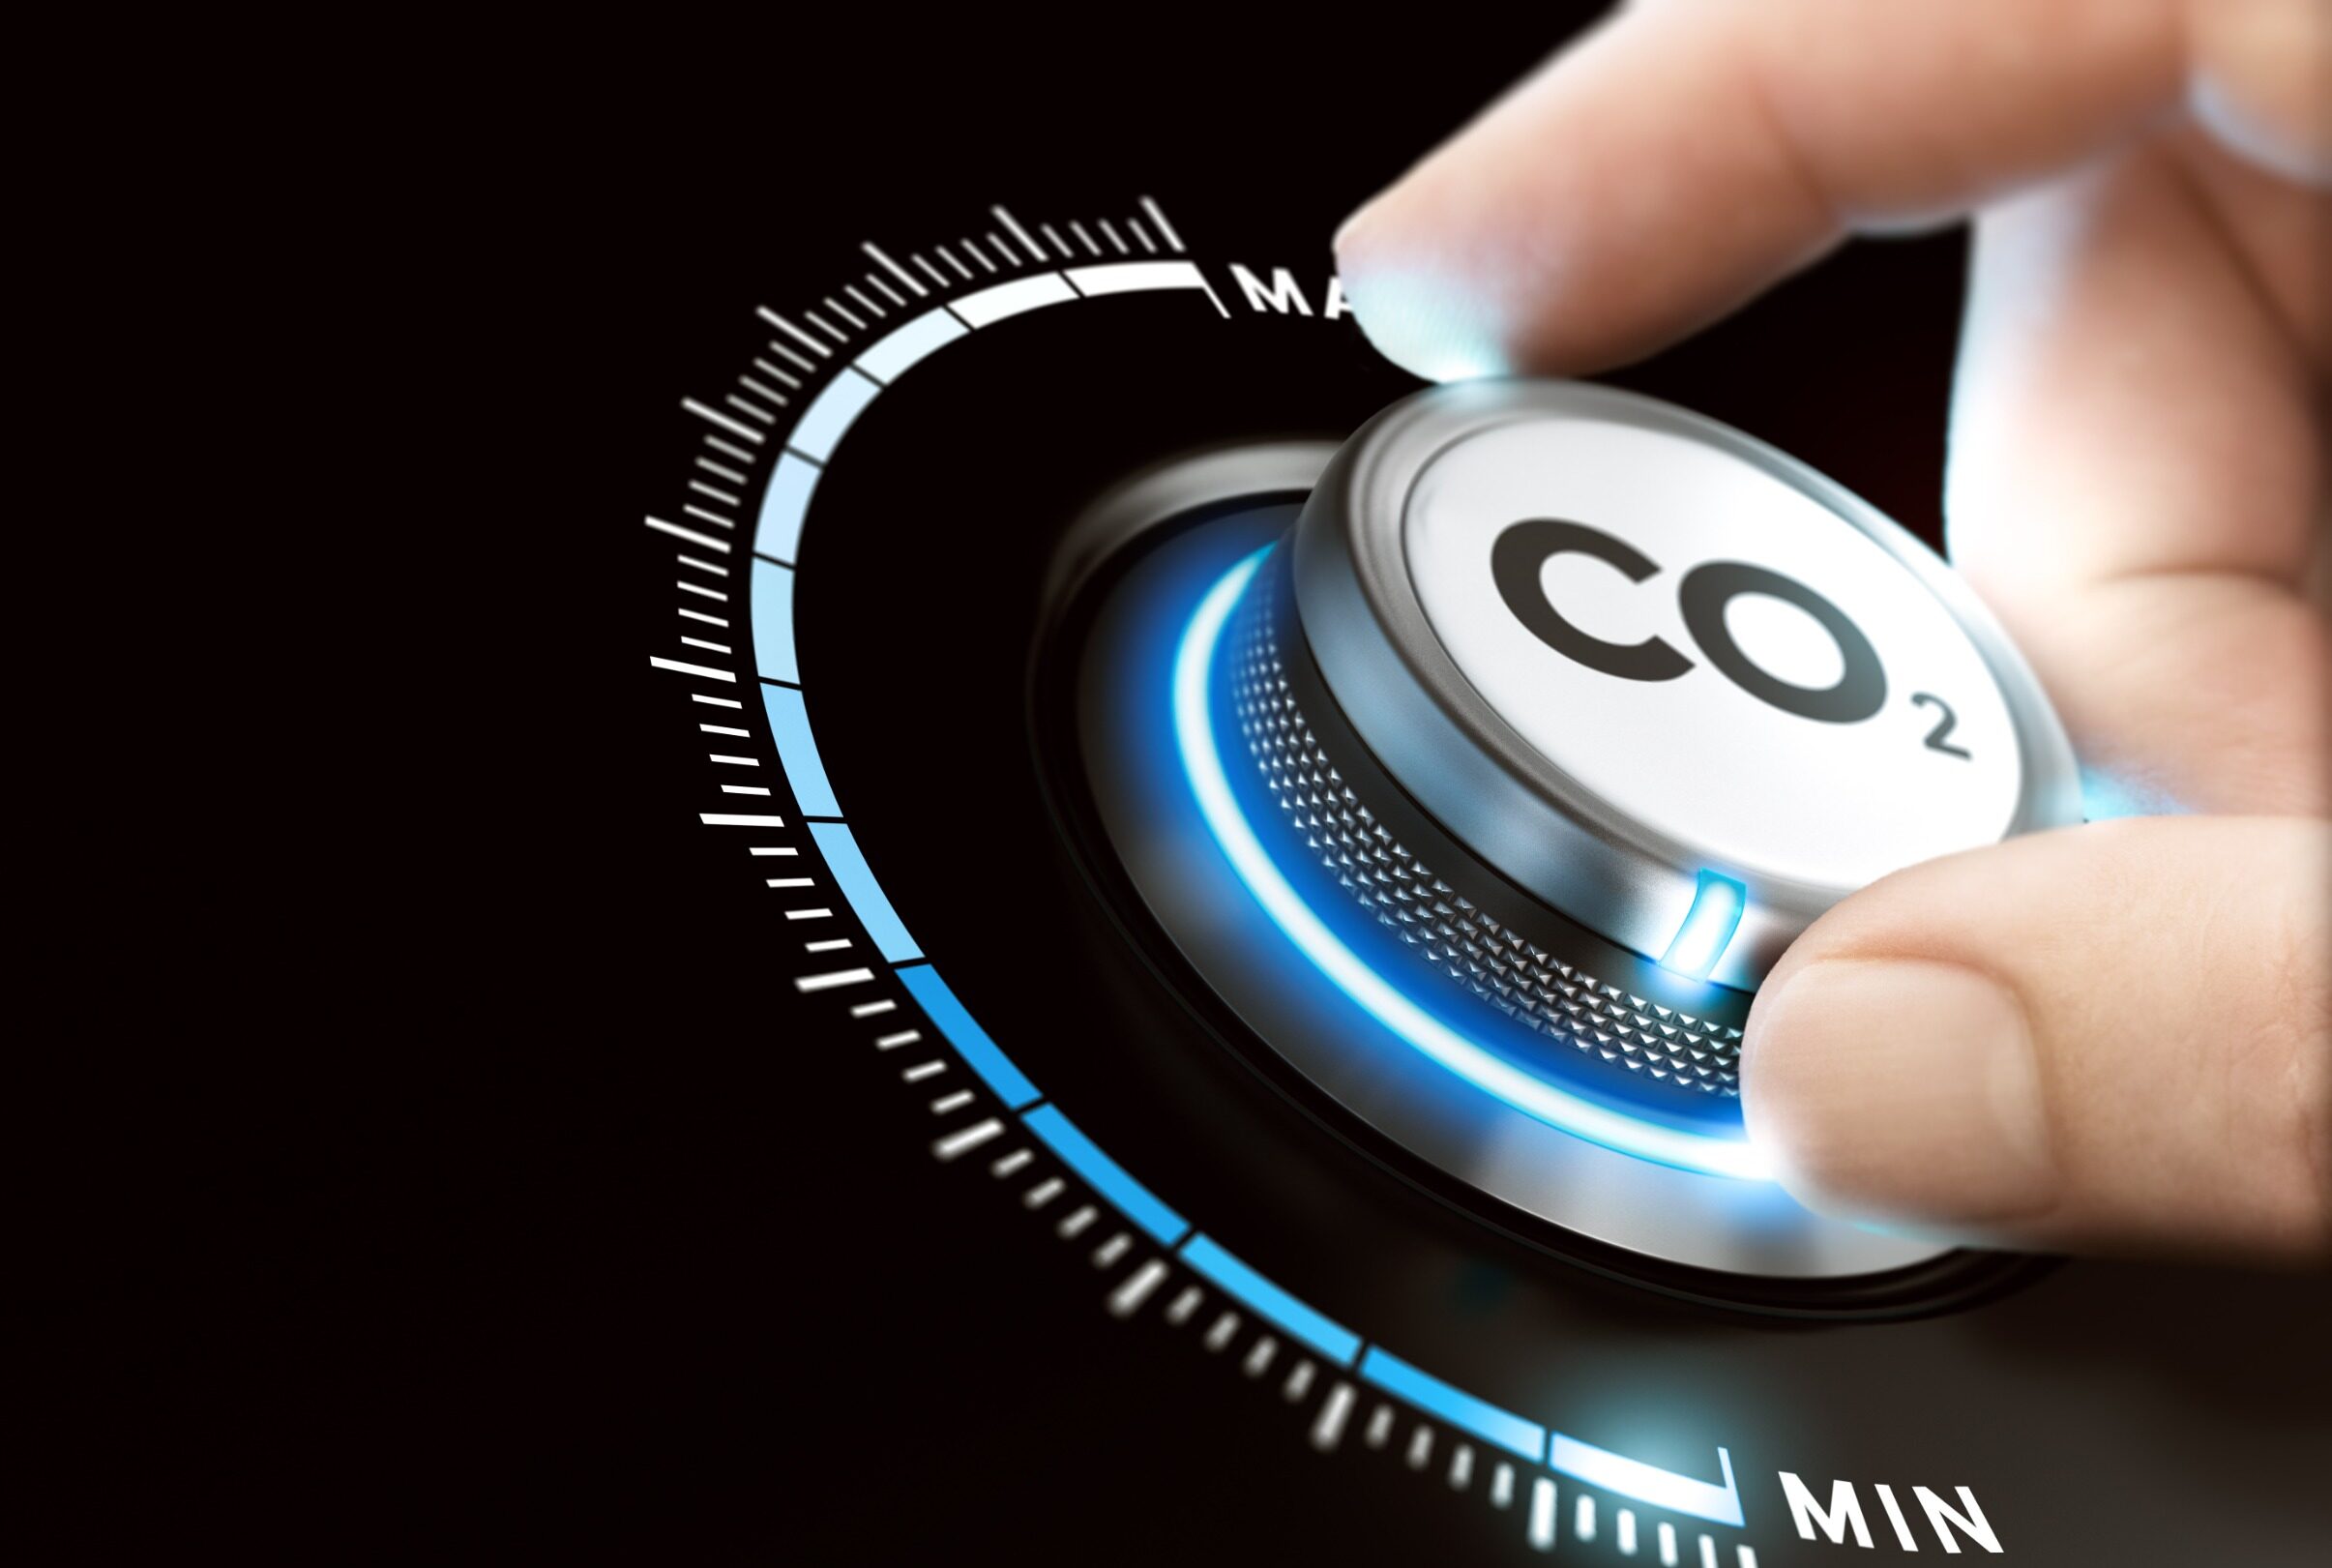 BMWK legt Eckpunkte einer Carbon-Management-Strategie vor